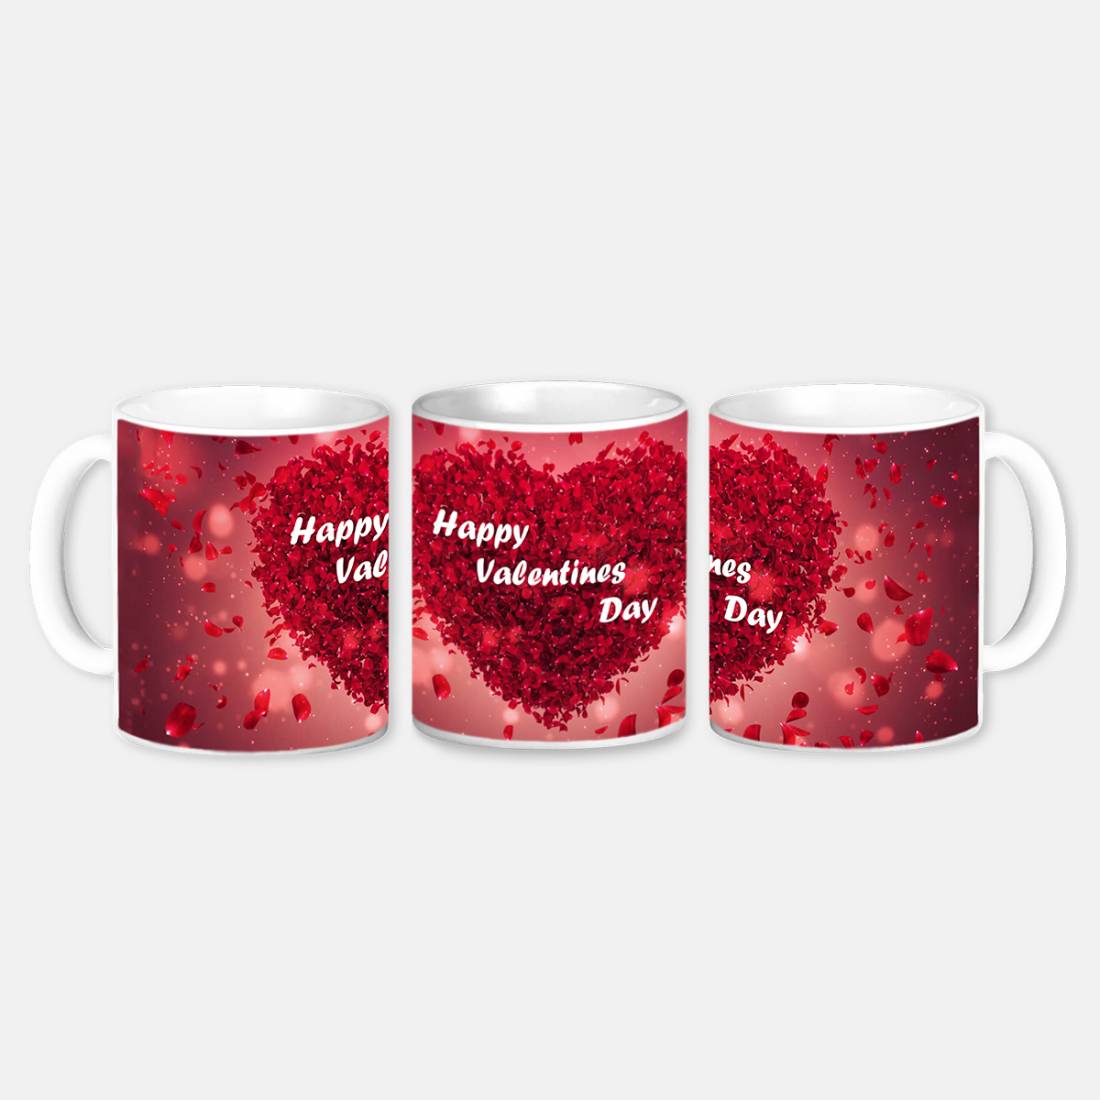 Boyfriend Mug Coffee Cup Funny Gifts For Birthday Best Present Anniversary  A-58W | eBay